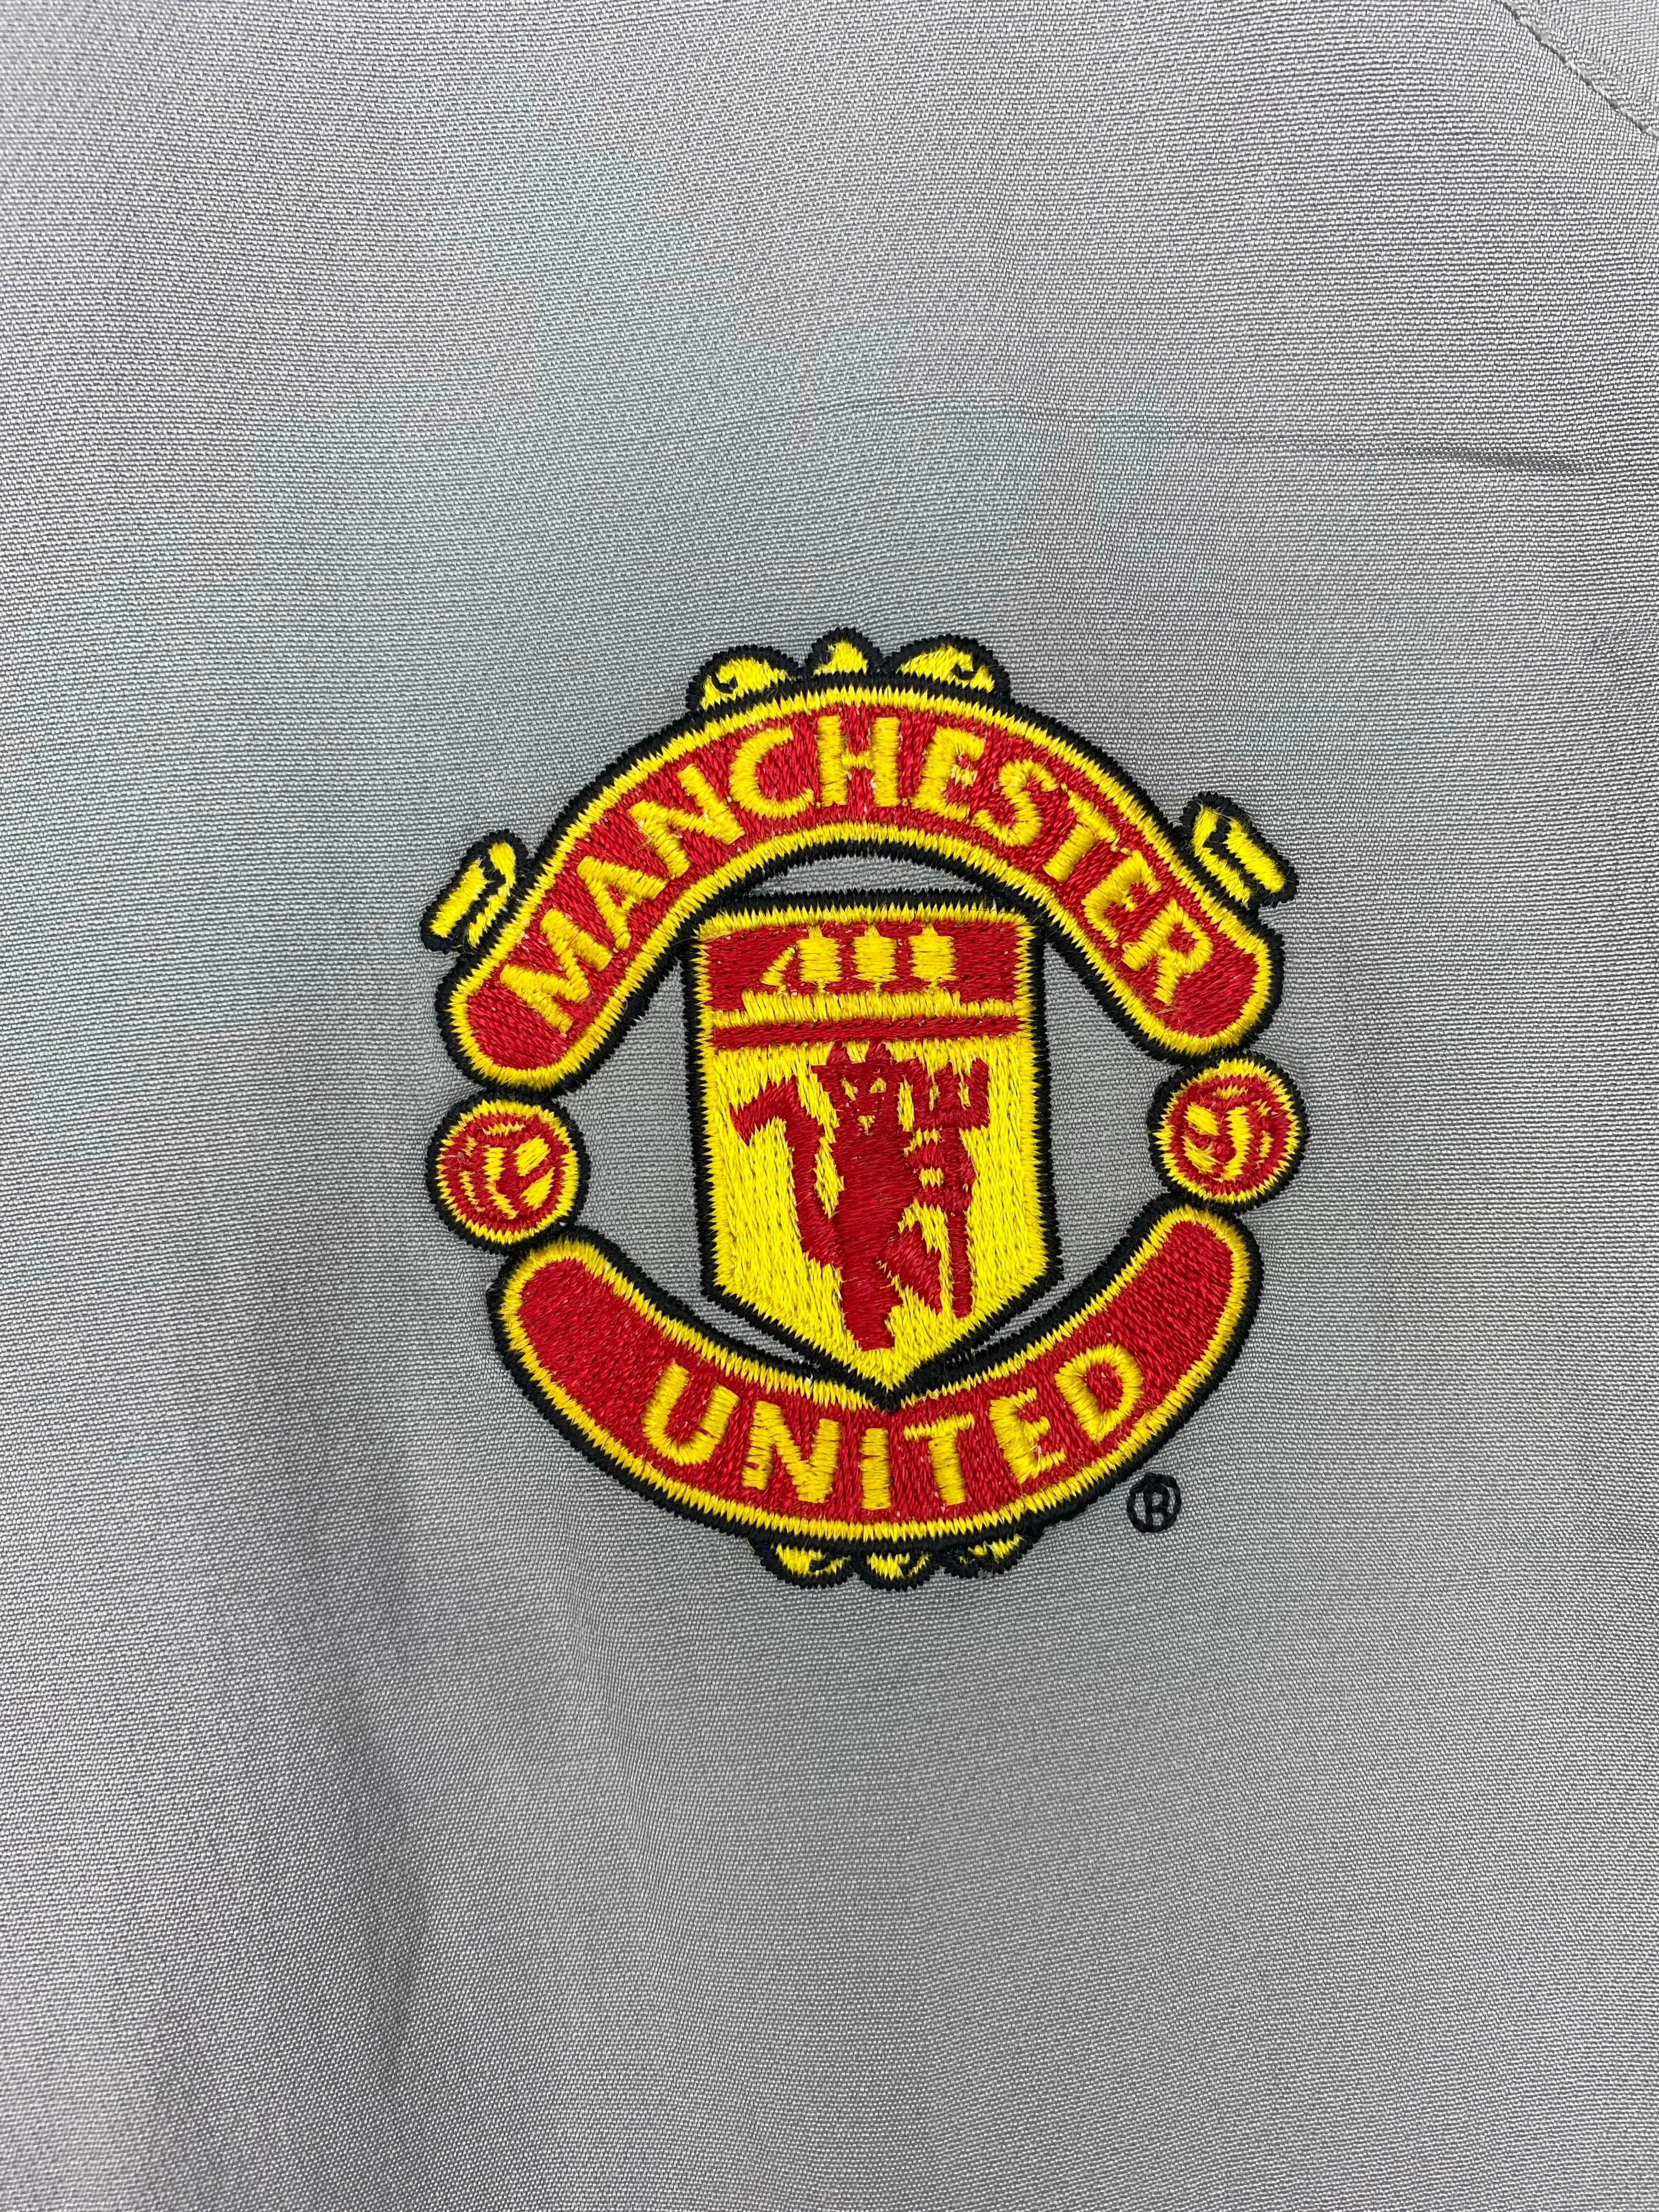 2005/06 Manchester United Training Jacket (XXL) 7.5/10